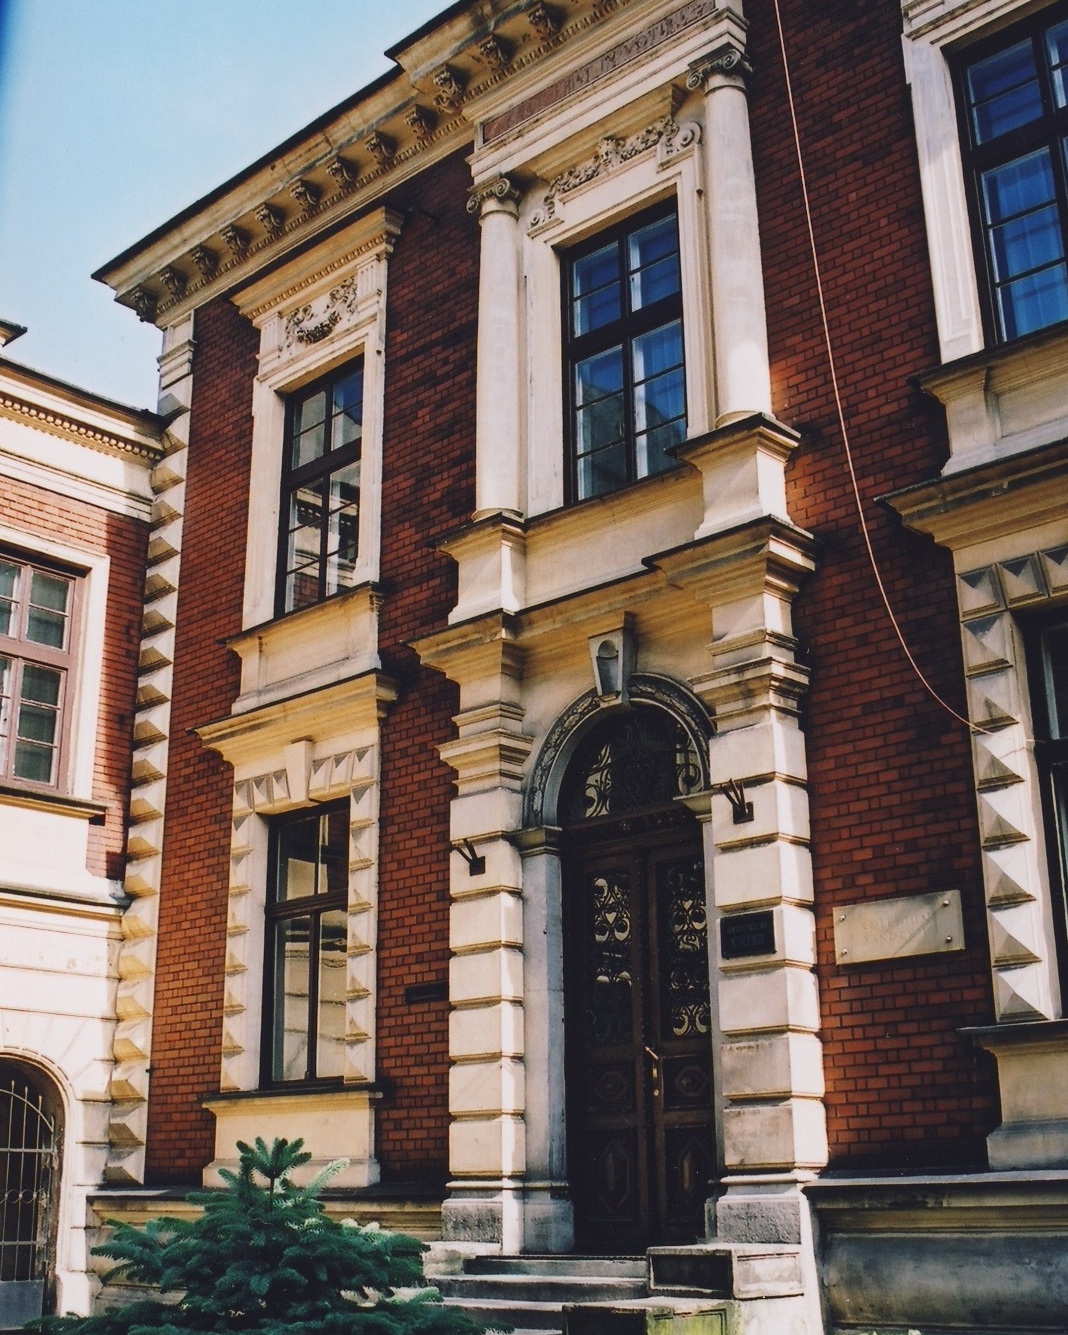 Budynek Instytutu Pedagogiki UJ od strony frontowej. Ozdobny gzyms, wejście główne i okna. Budynek z czerwonej cegły.